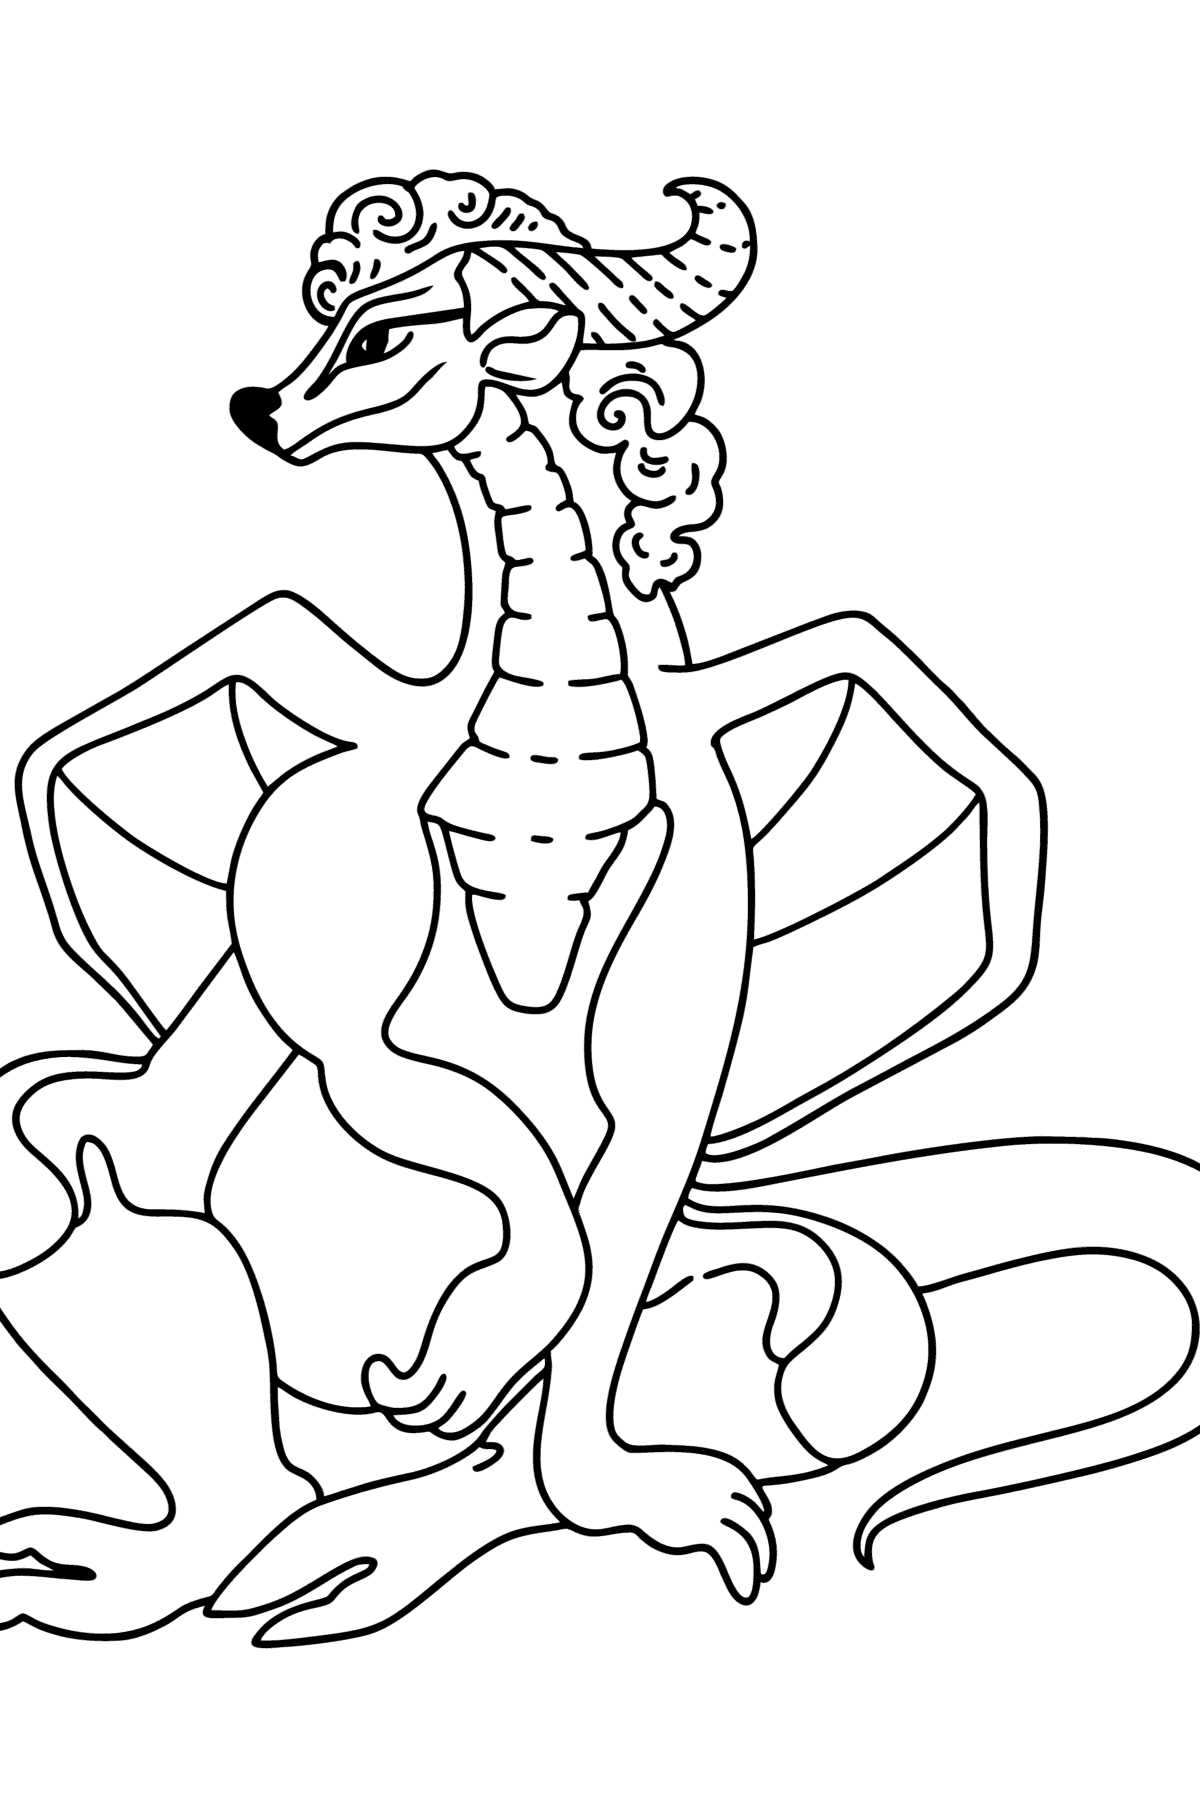 Desen de colorat dragon fericit - Desene de colorat pentru copii